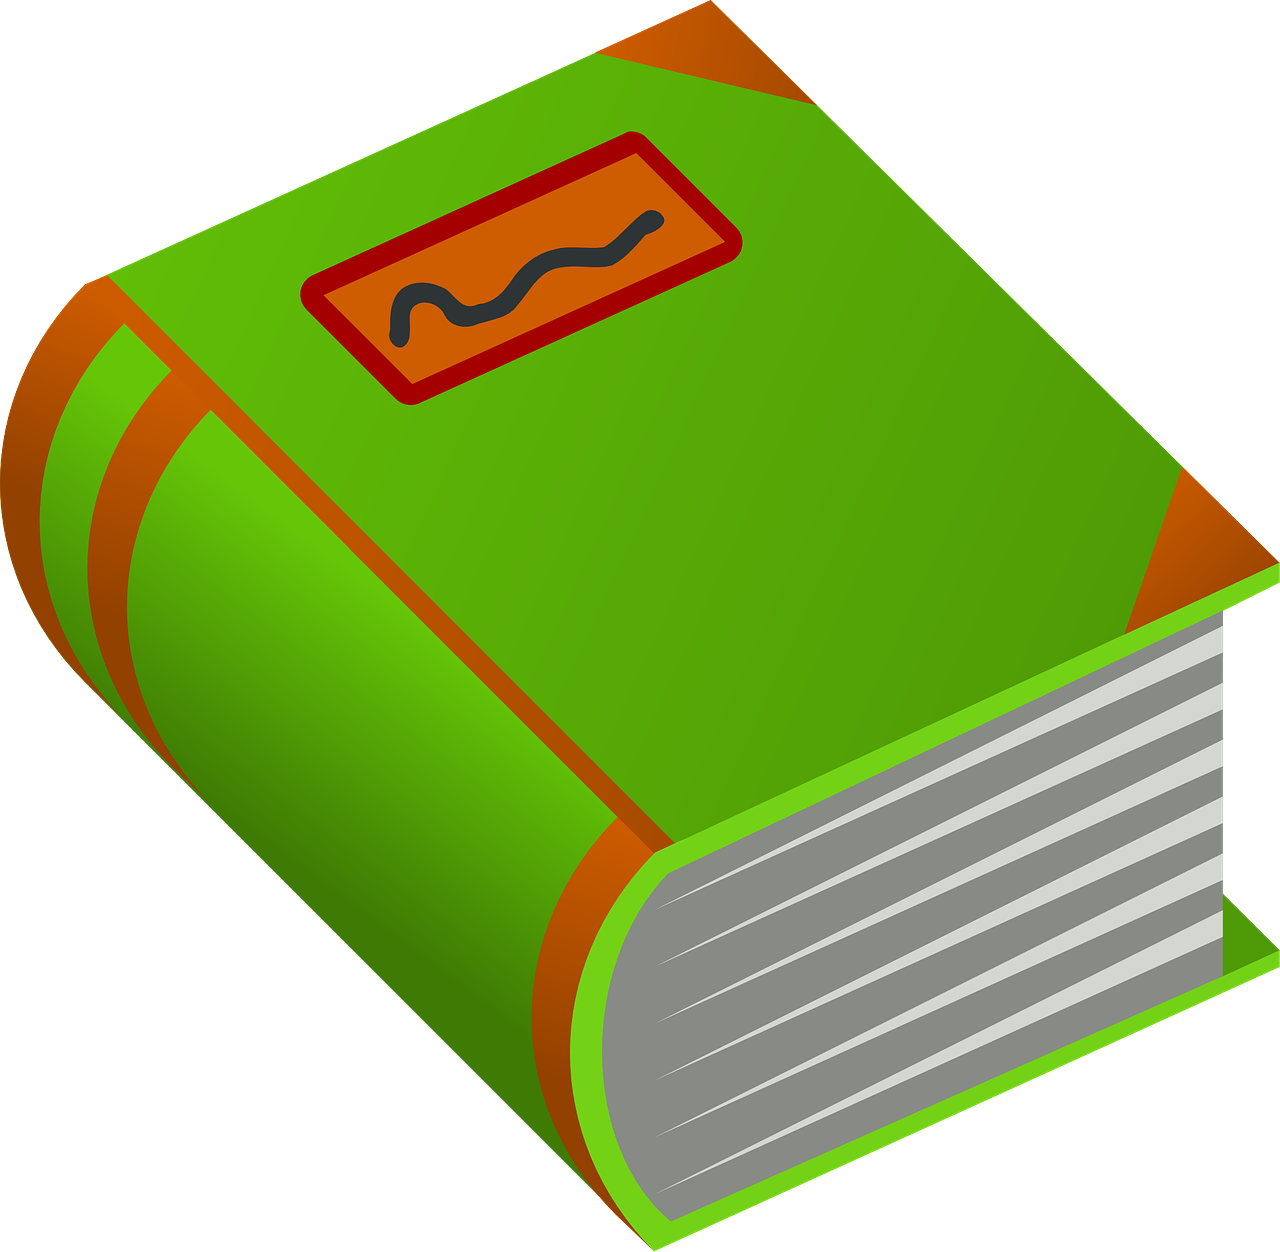 Knyga, Žalias, Storas, Popieriai, Oranžinė, Dizainai, Parašyta, Tekstai, Nuotraukos, Vaizdai